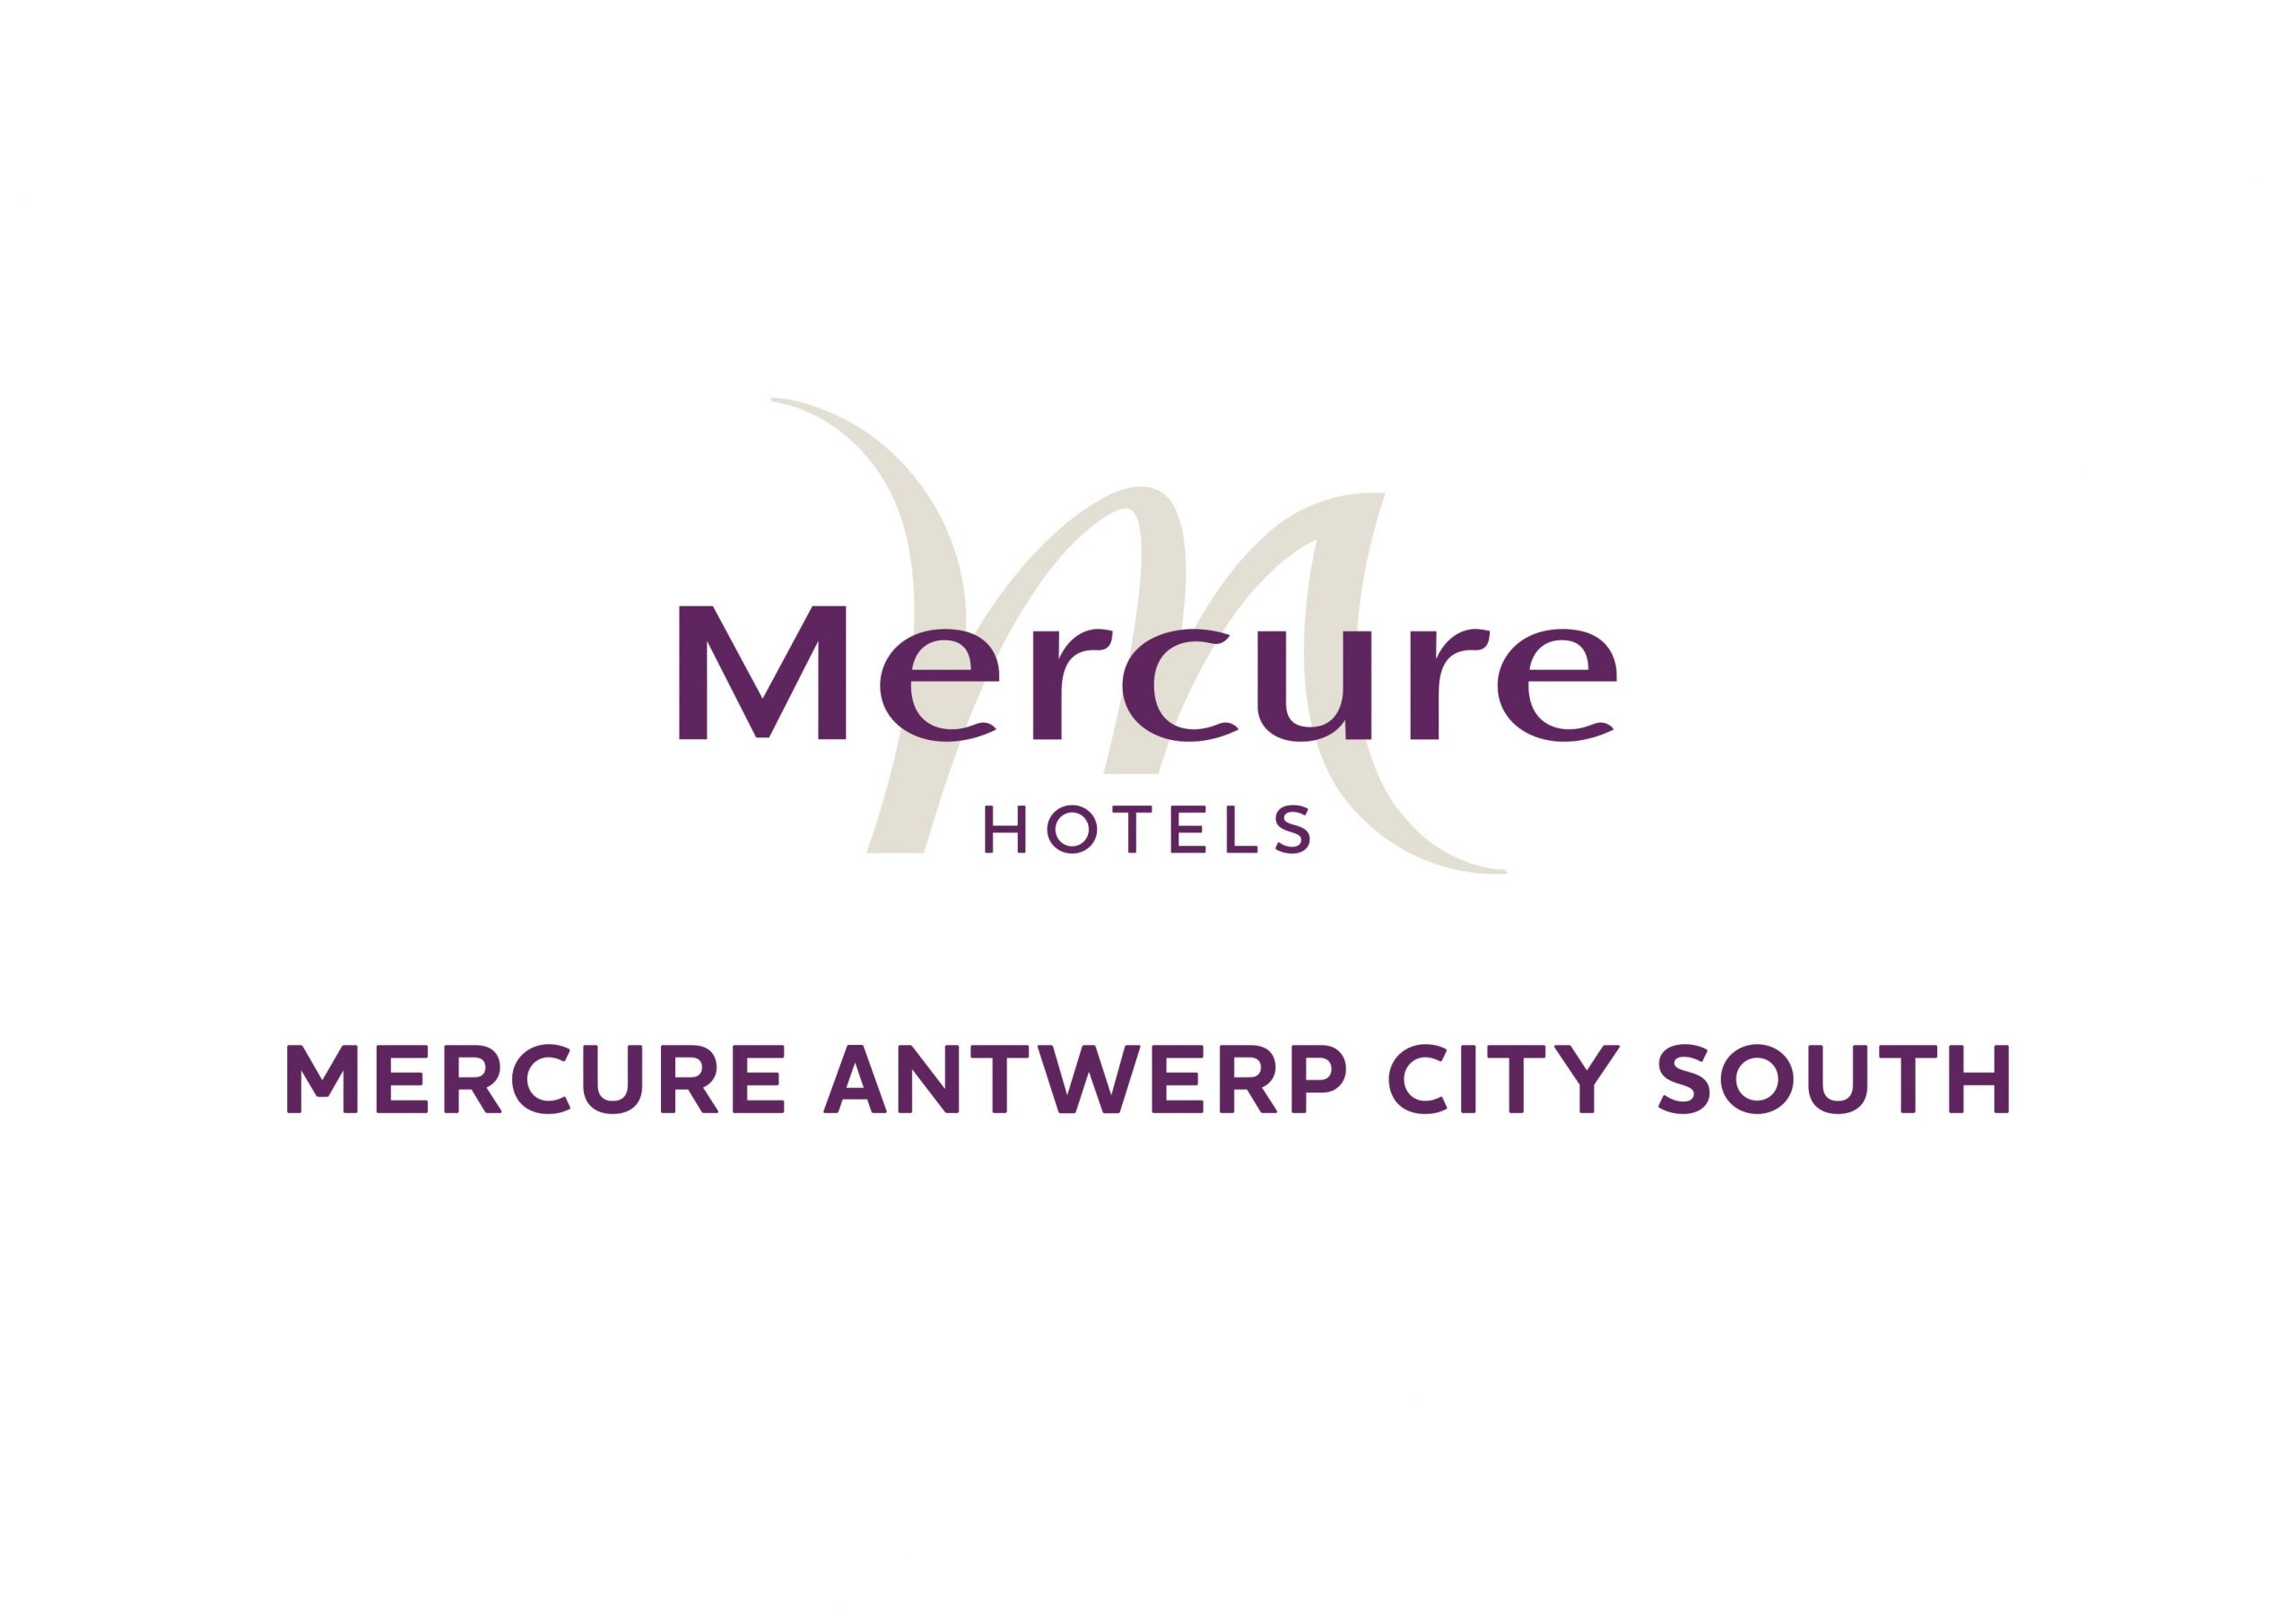 Mercure Antwerp City South